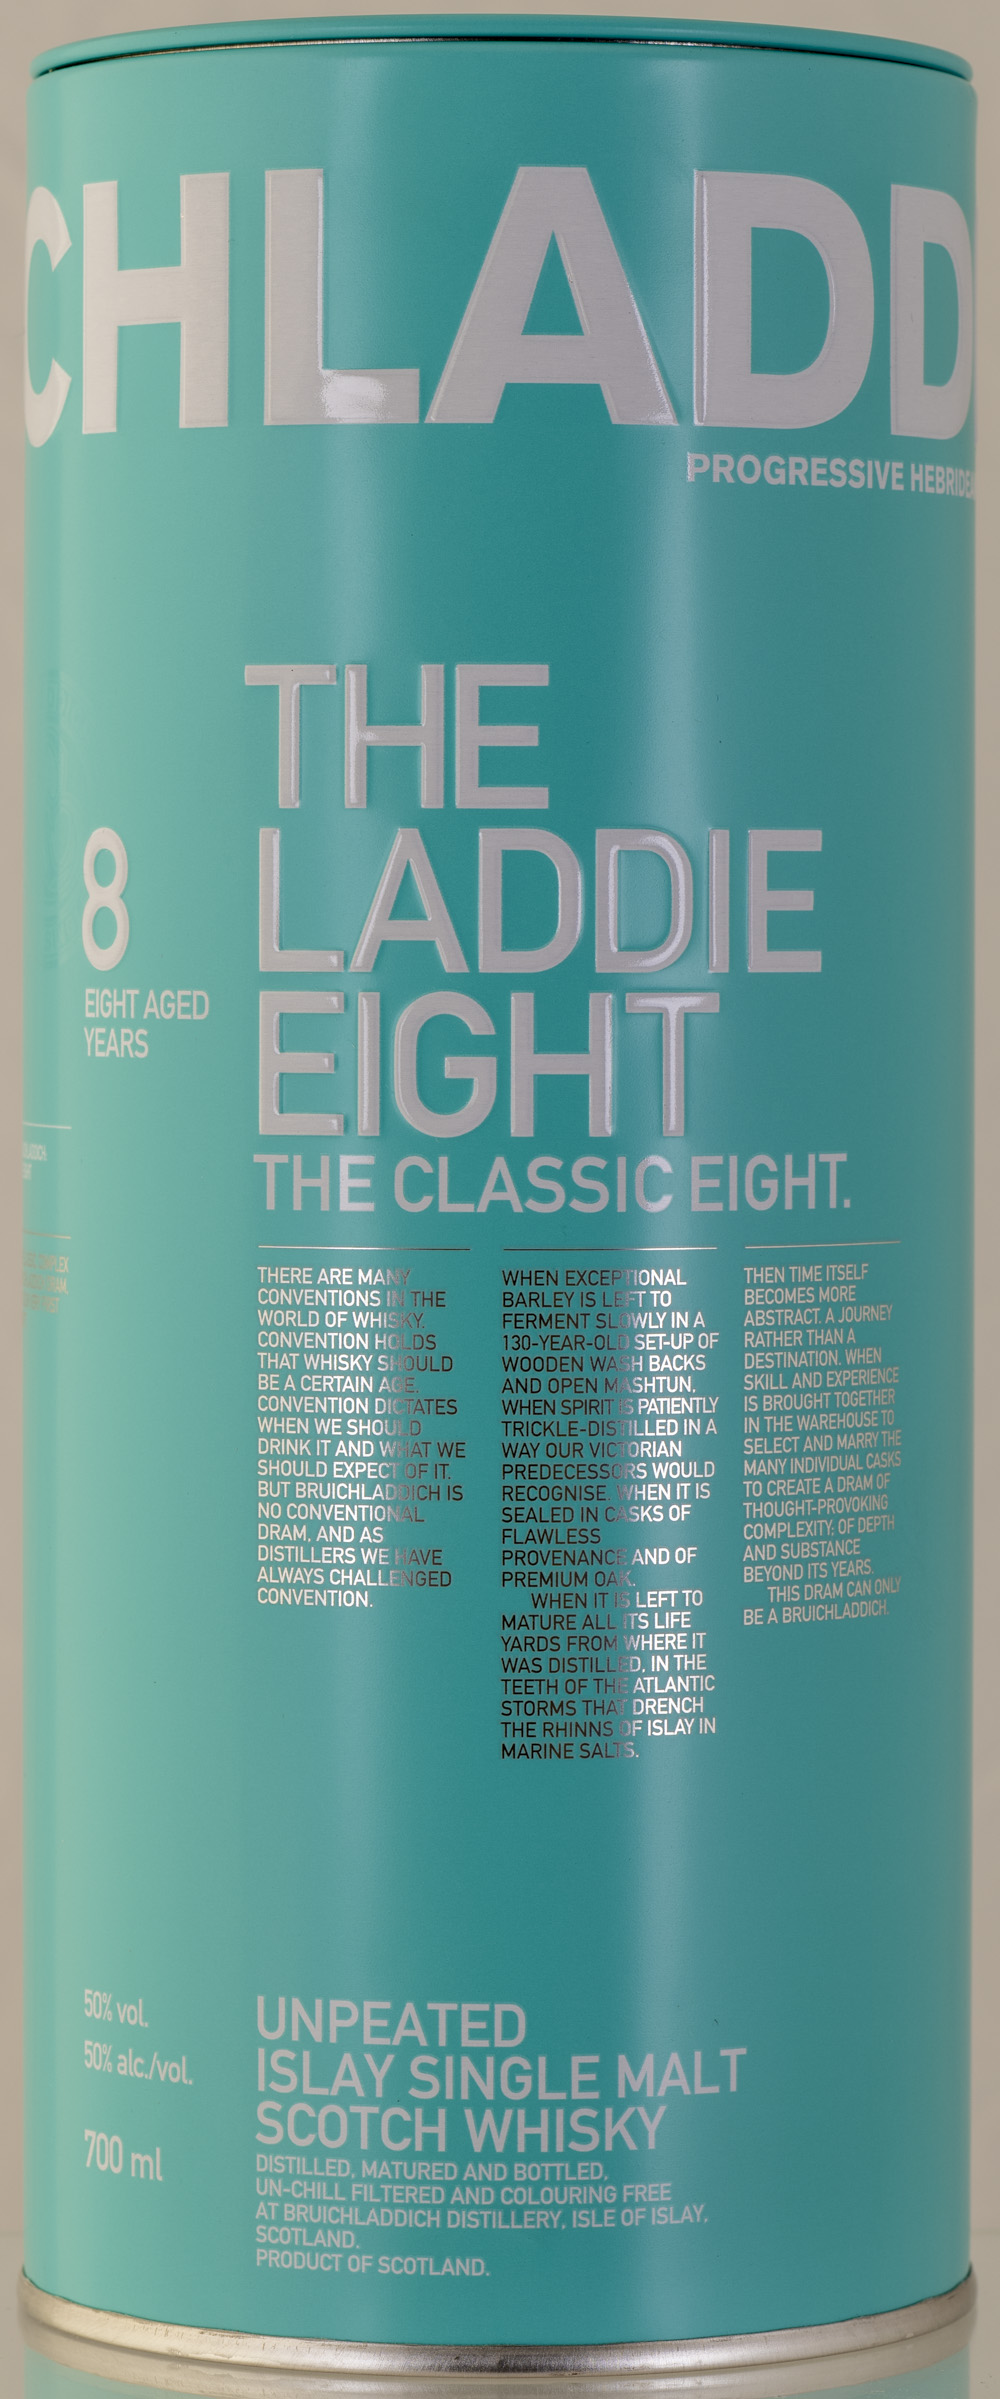 Billede: PHC_2293 - Bruichladdich The Laddie Eight - tube front.jpg